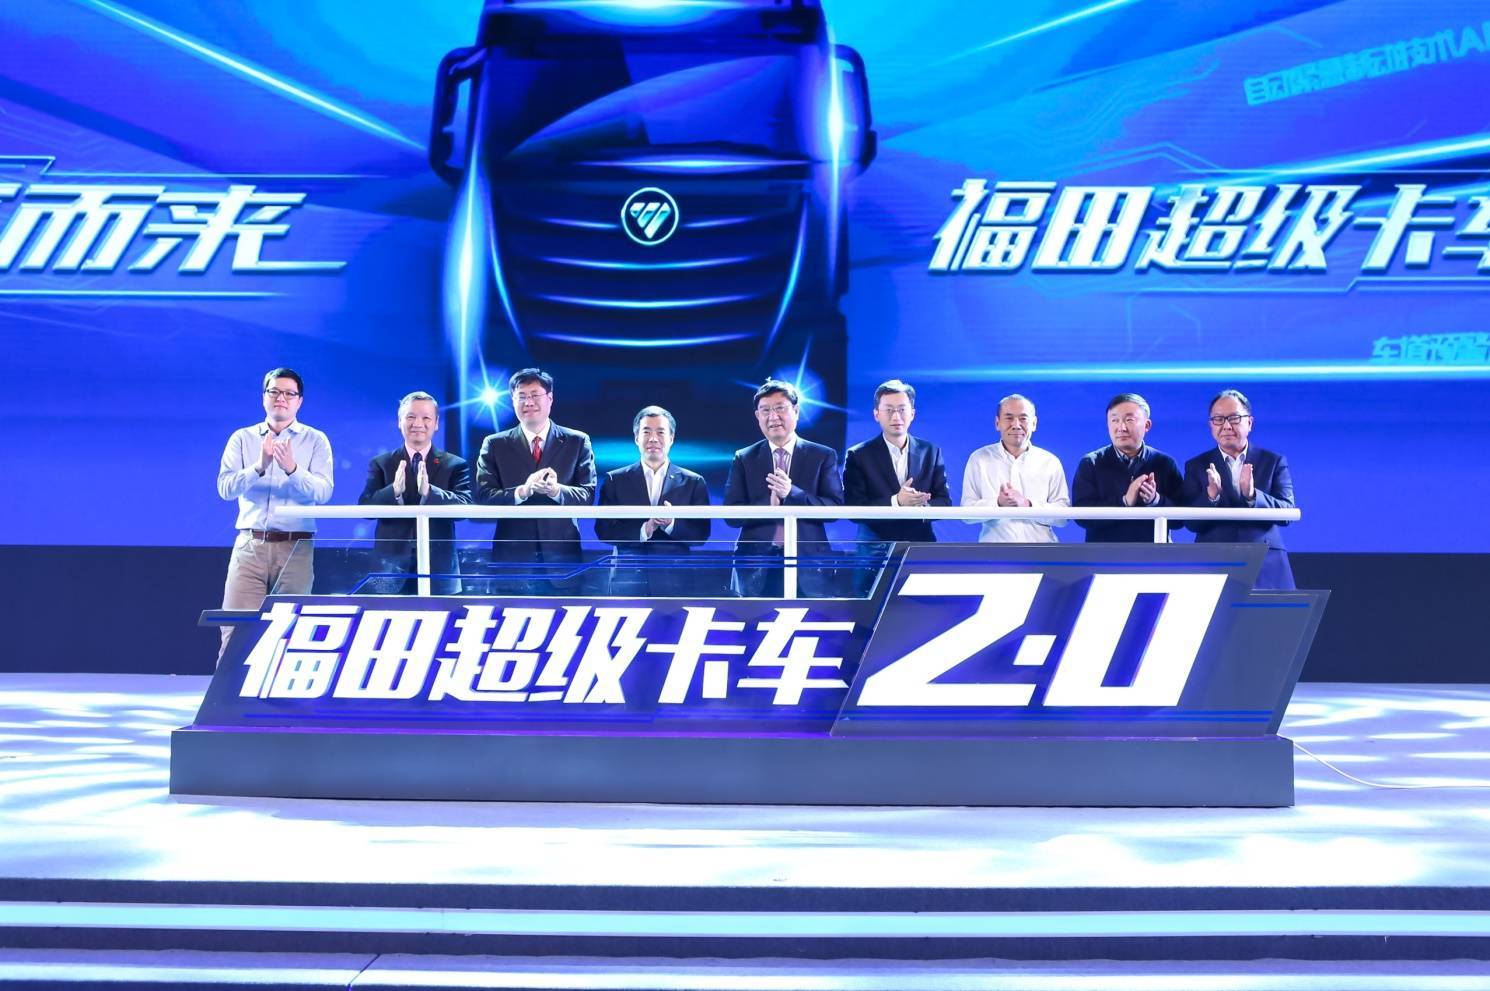 中国超级卡车进入2.0阶段 欧马可以智慧科技新时代